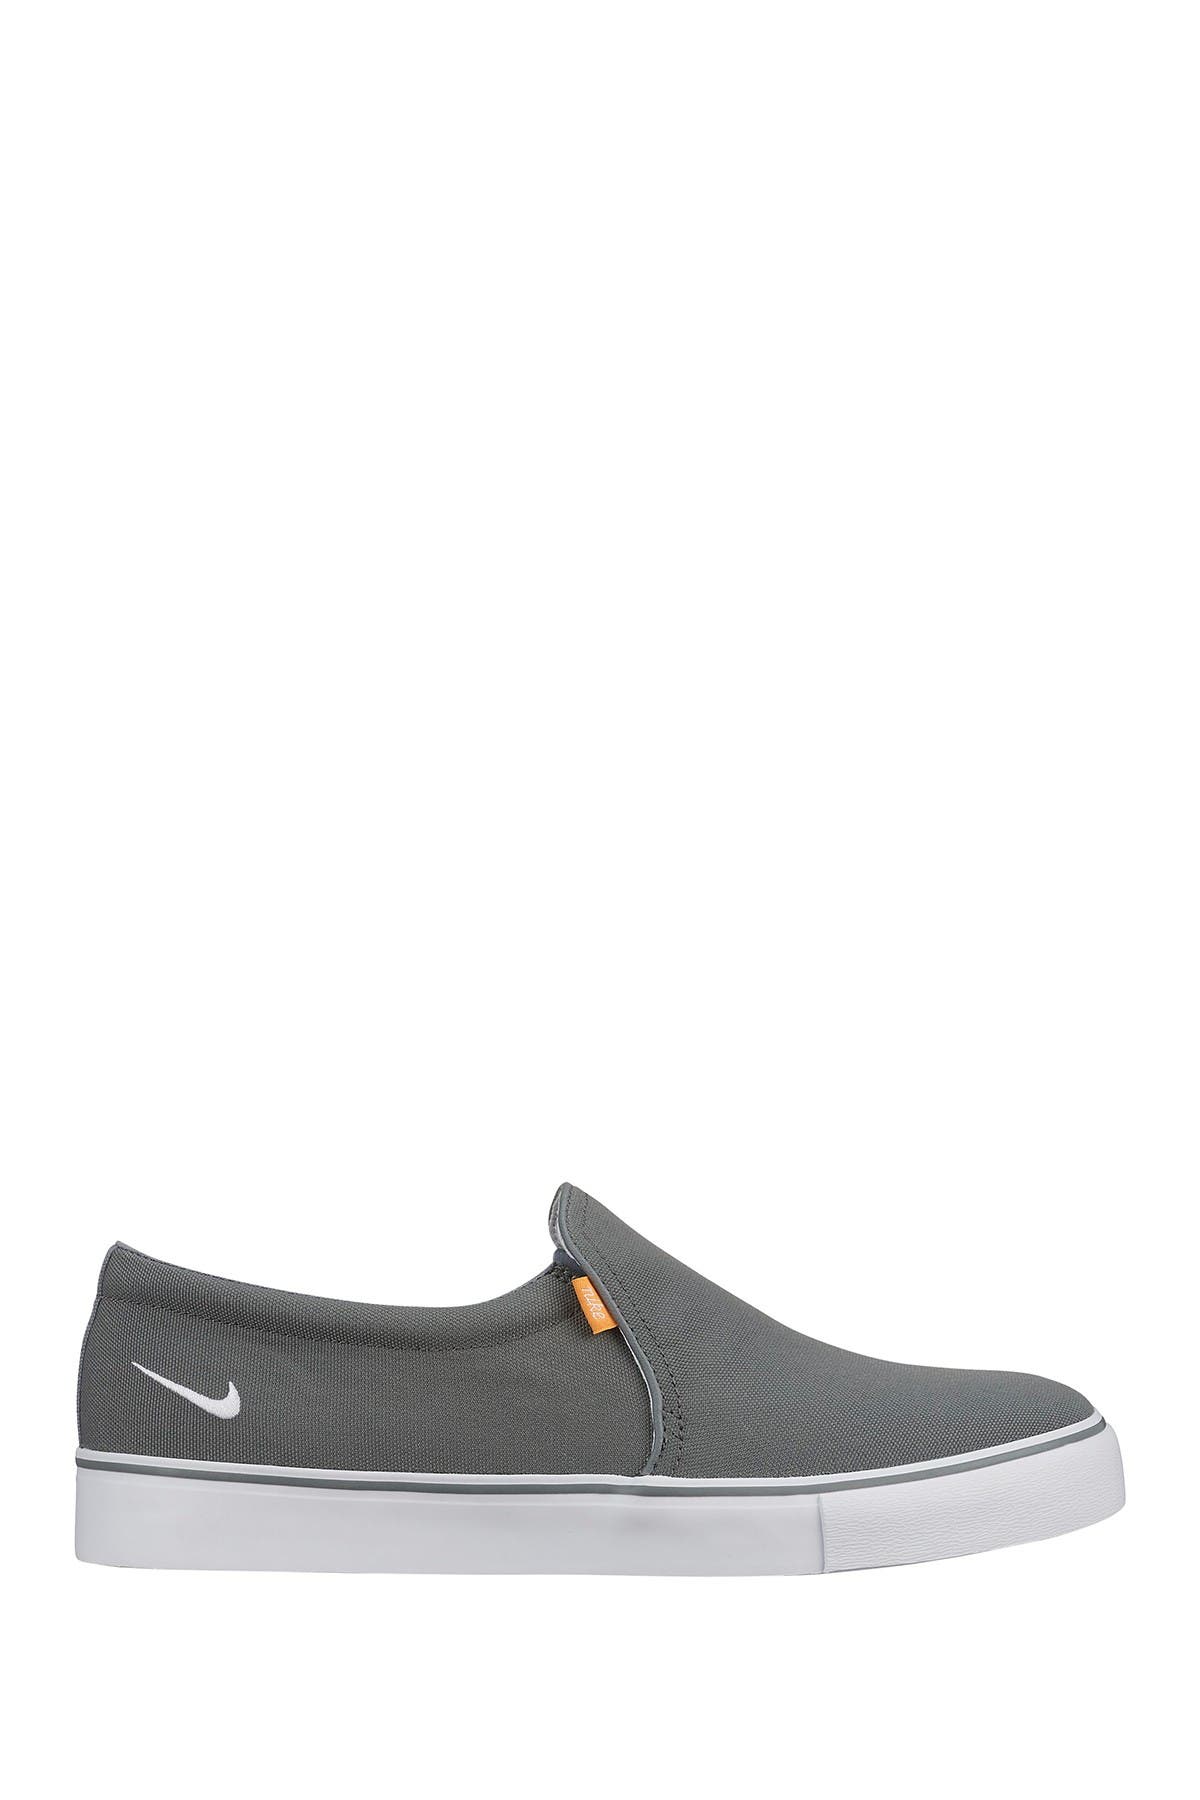 Nike | Court Royale AC Slip-On Sneaker 